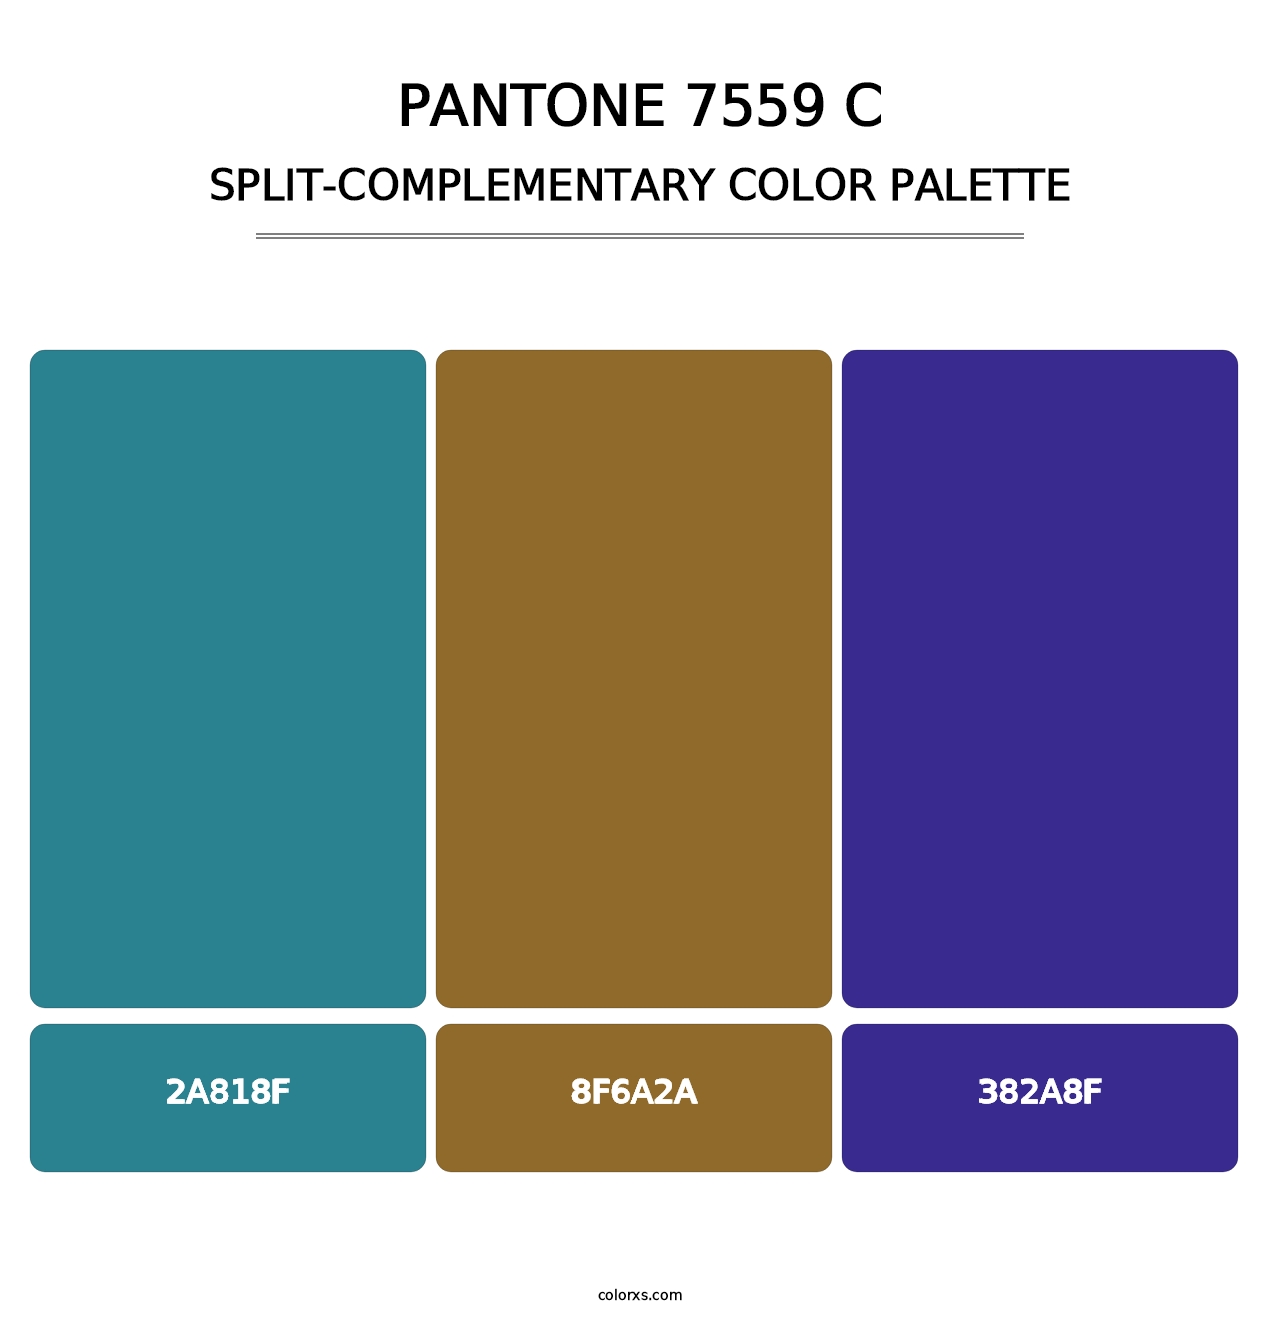 PANTONE 7559 C - Split-Complementary Color Palette